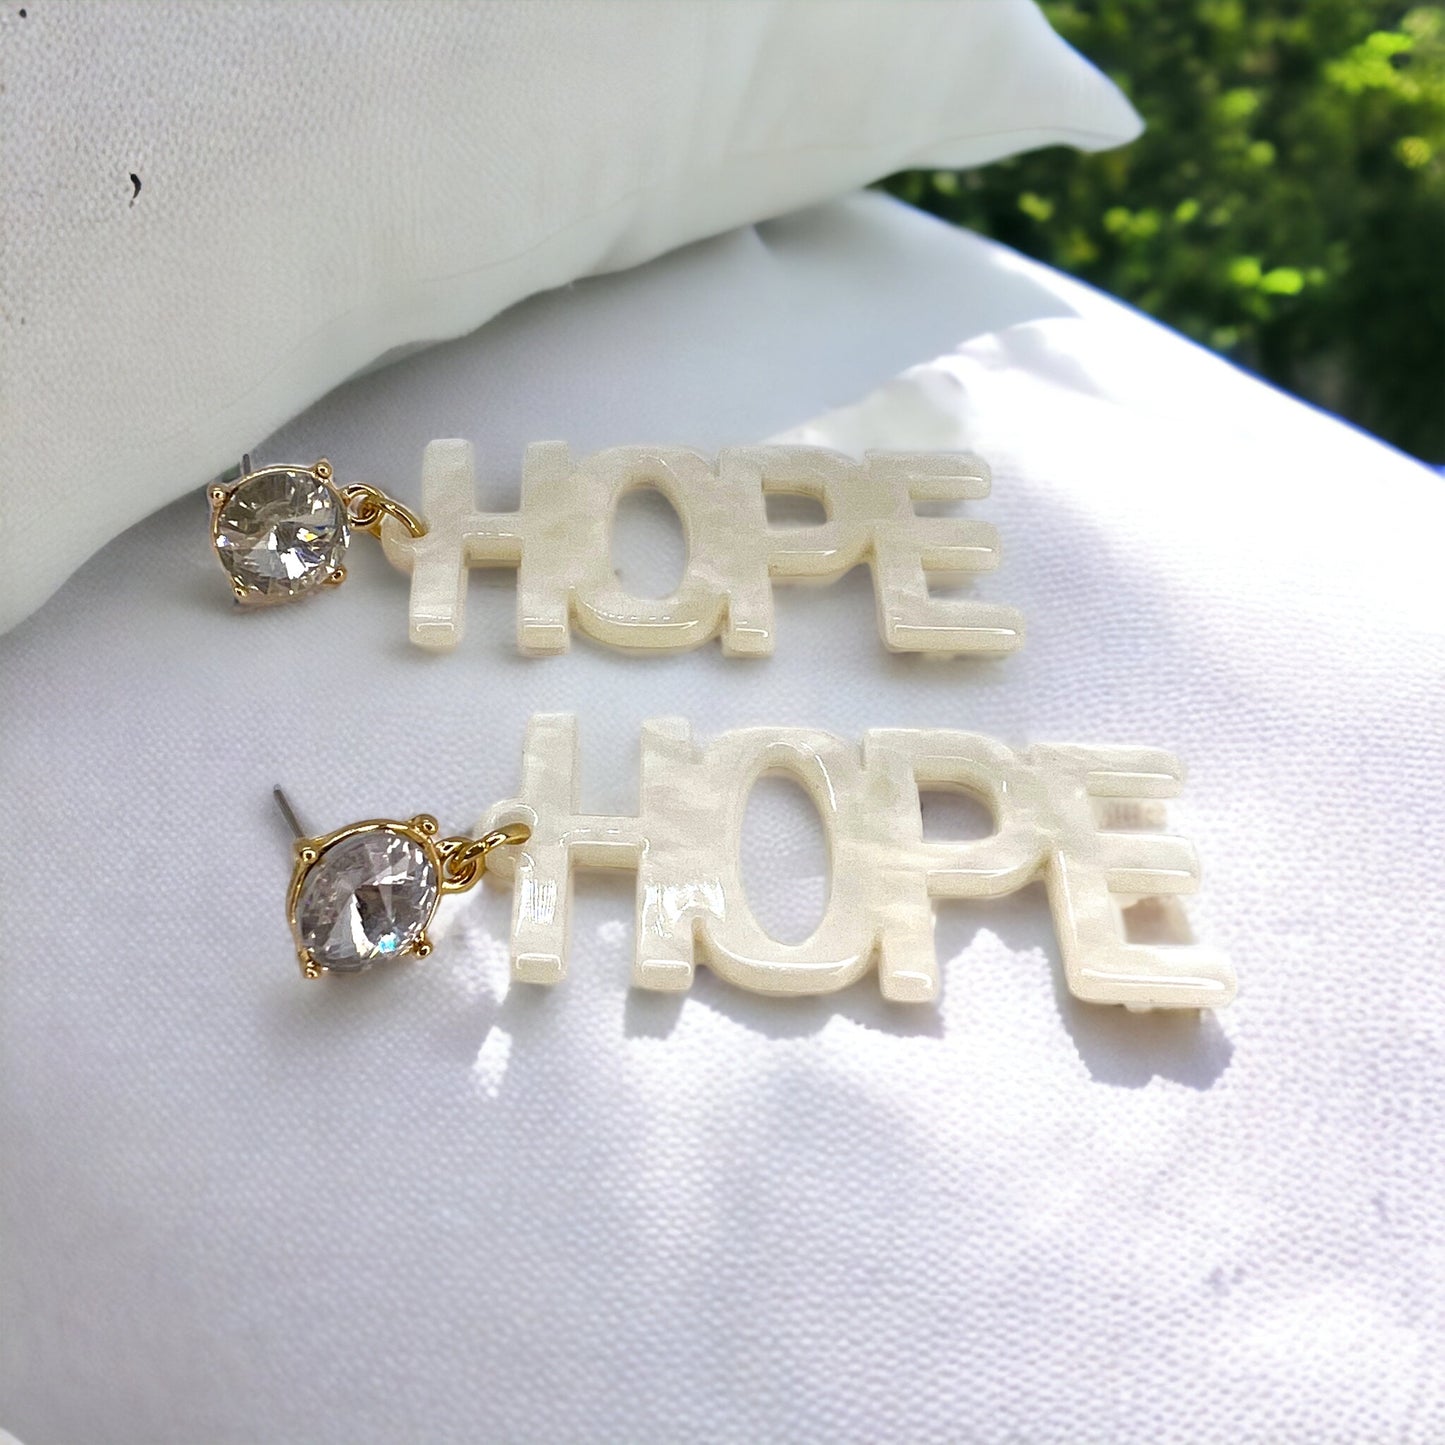 Hope Earrings - Inspirational Earrings, Handmade Earrings, White Earrings, Motivational Gift